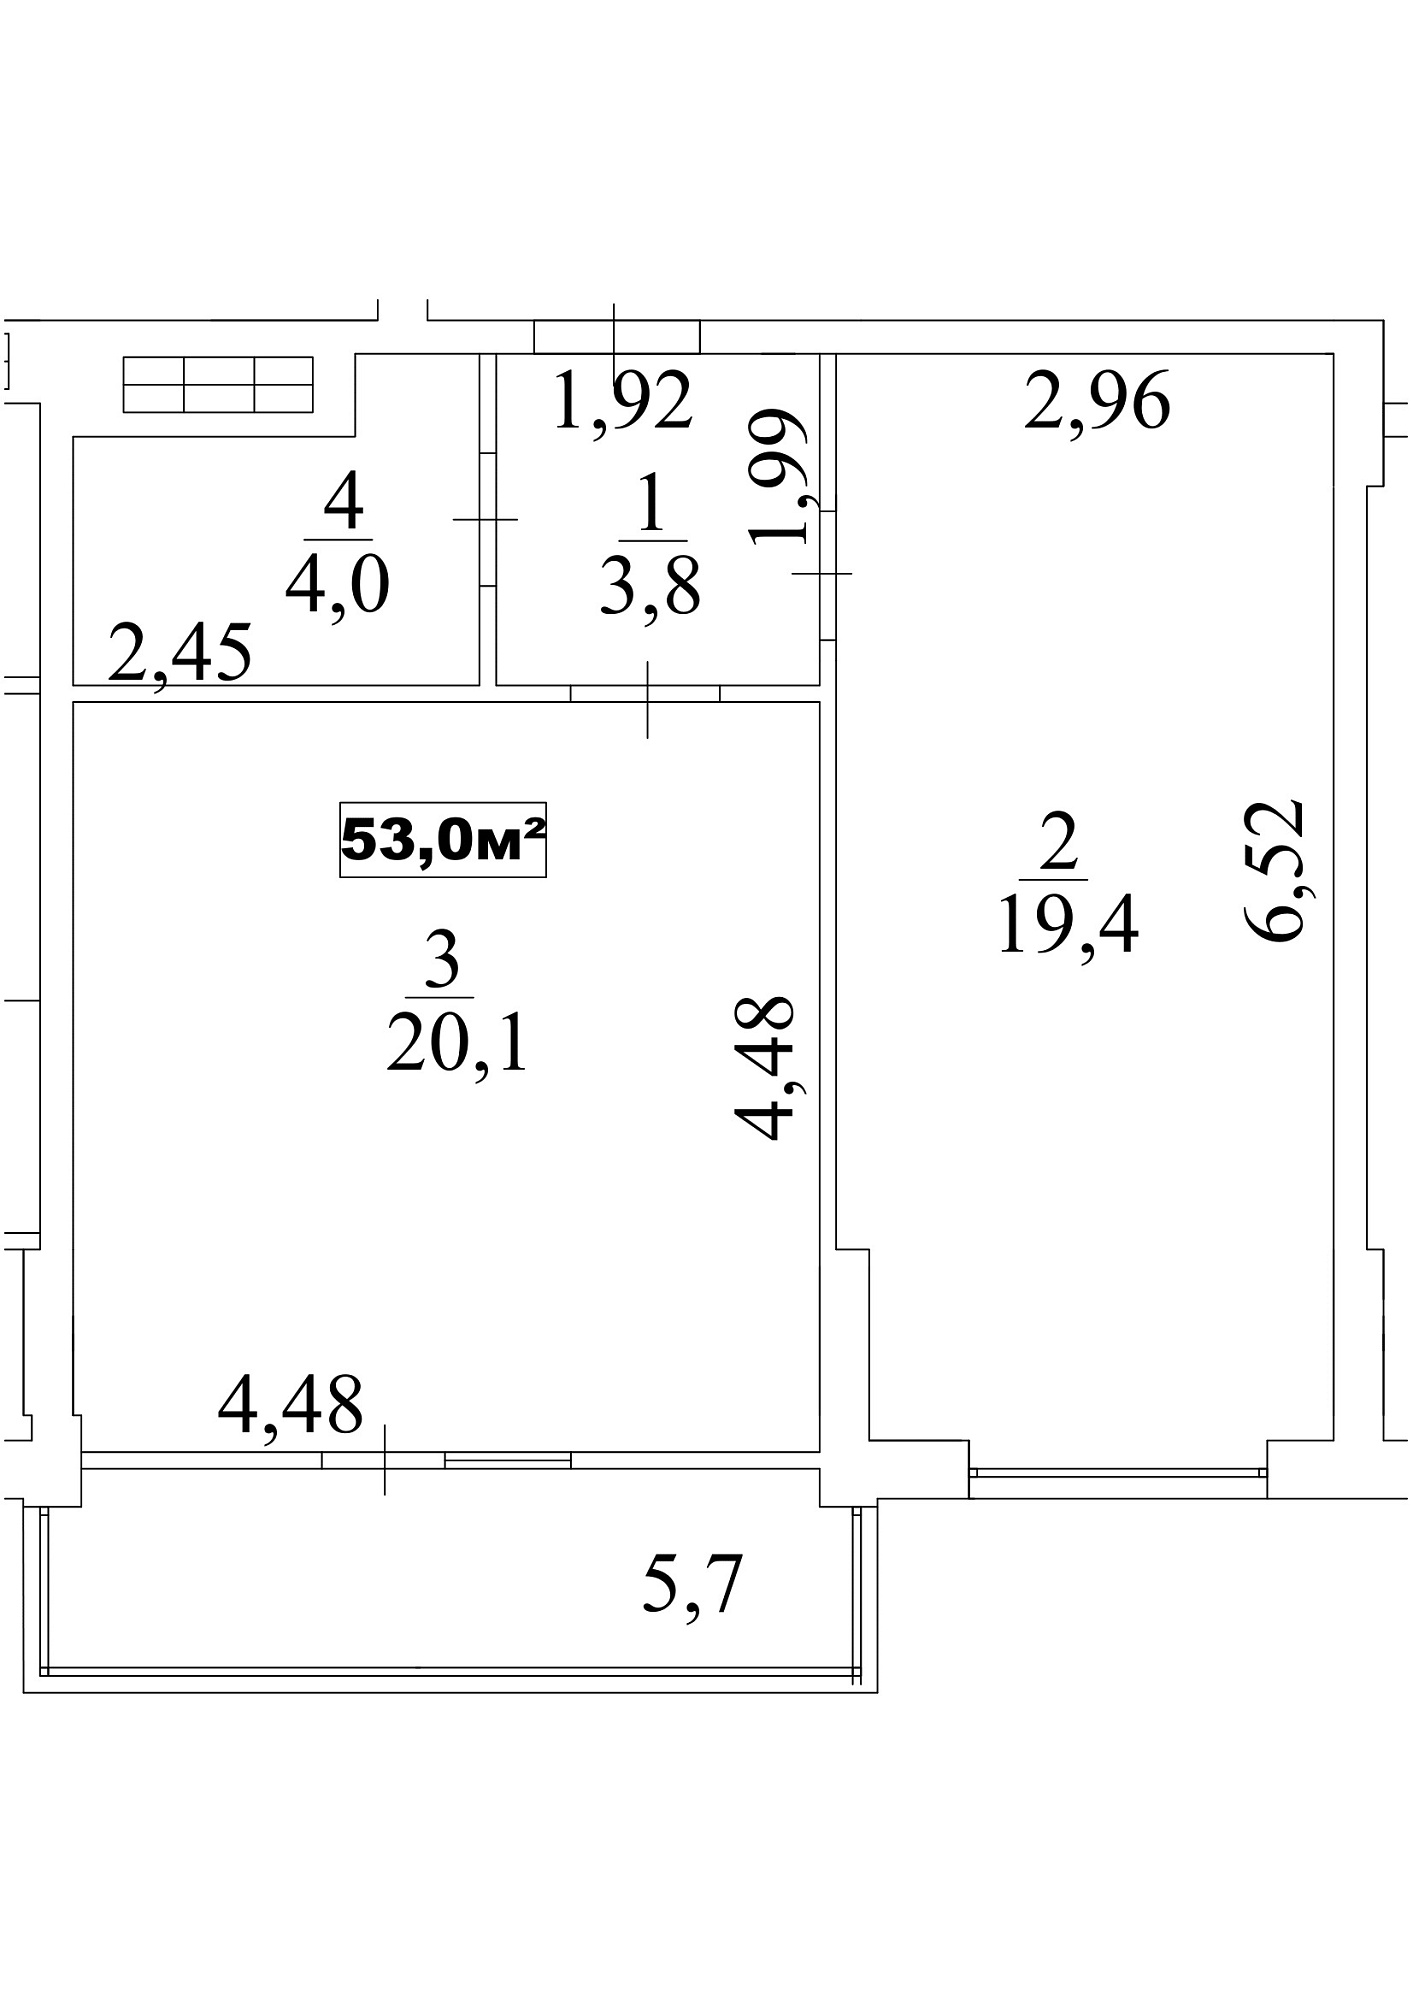 Планировка 1-к квартира площей 53м2, AB-10-10/00089.